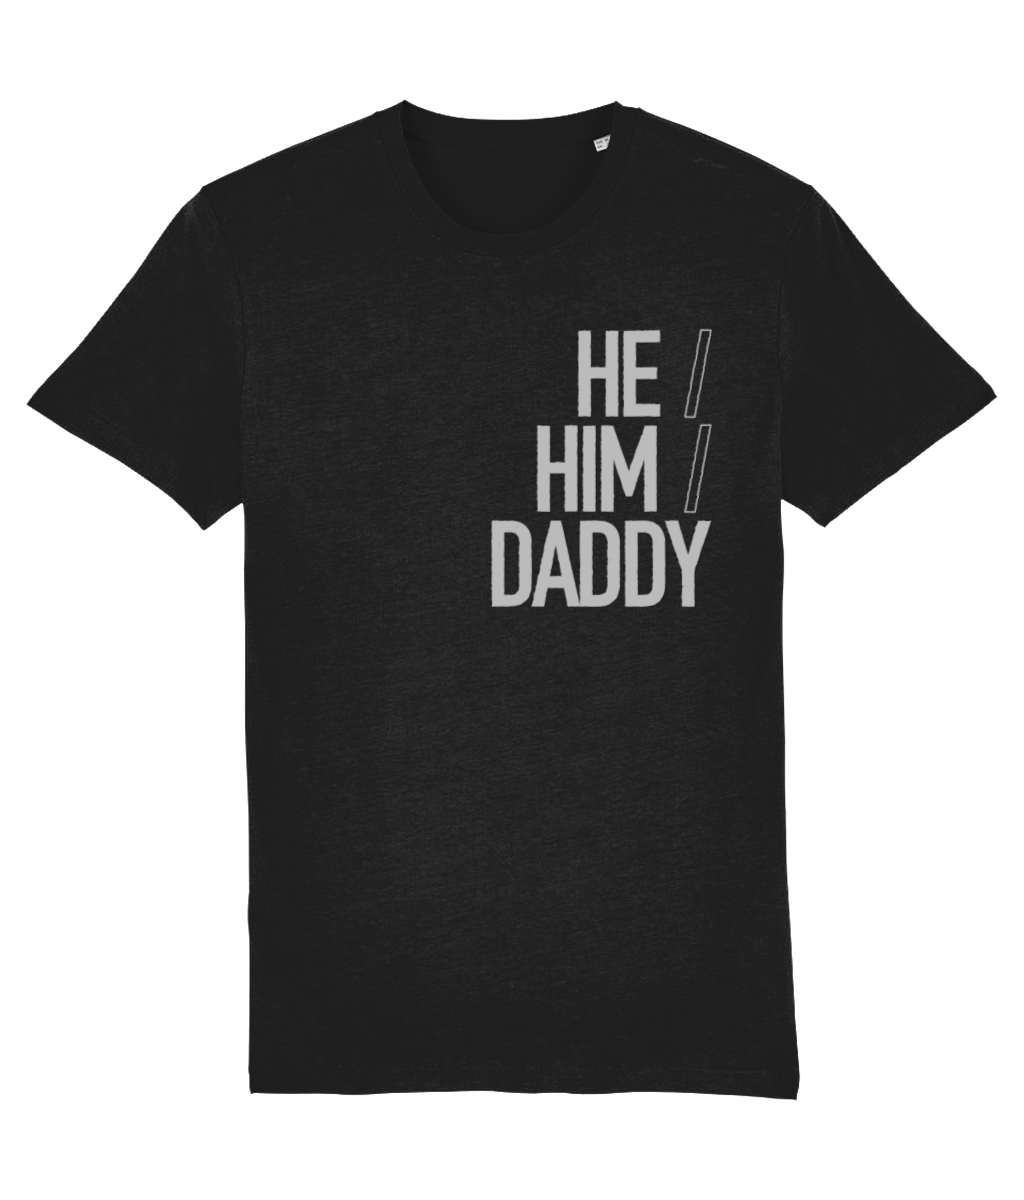 He/Him/Daddy Organic Cotton T-shirt